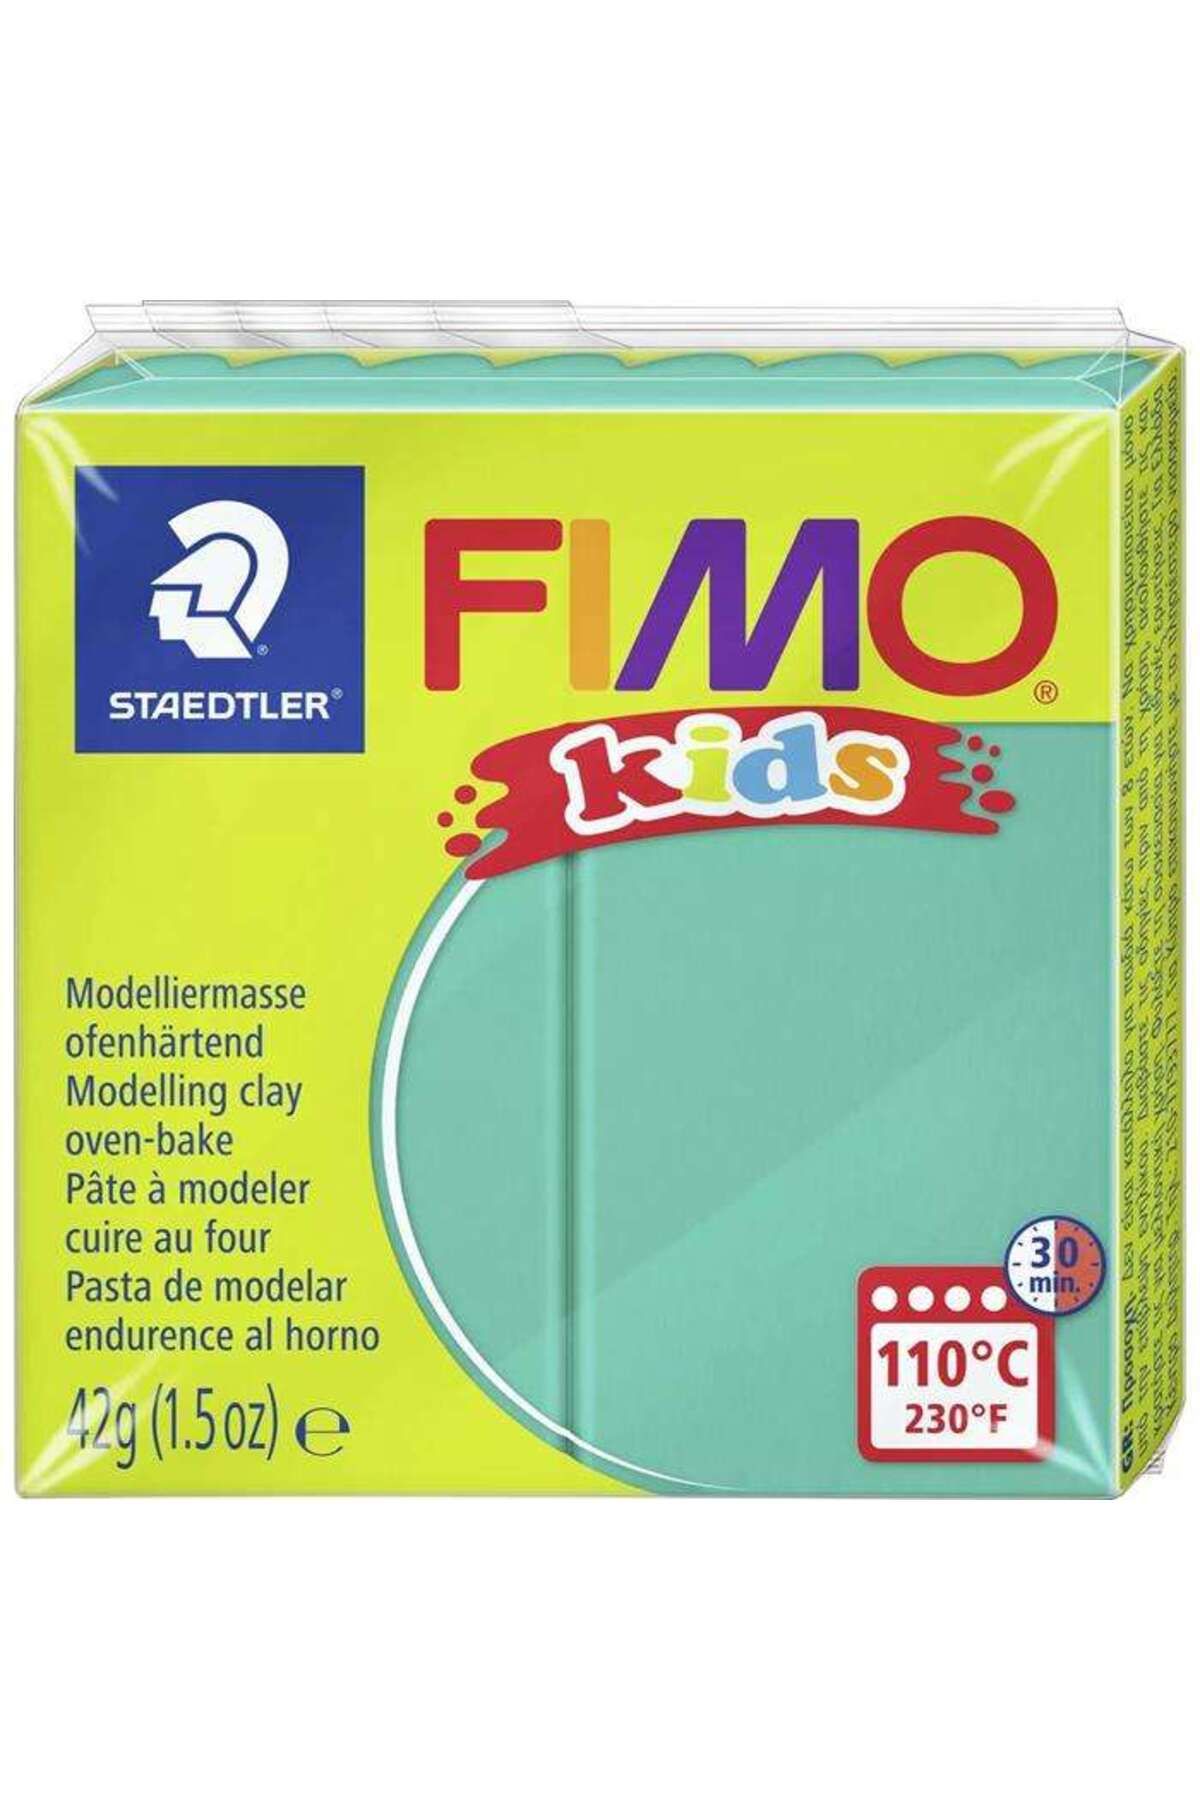 Staedtler Fimo Kids Modelleme Kili 42 g Green 5